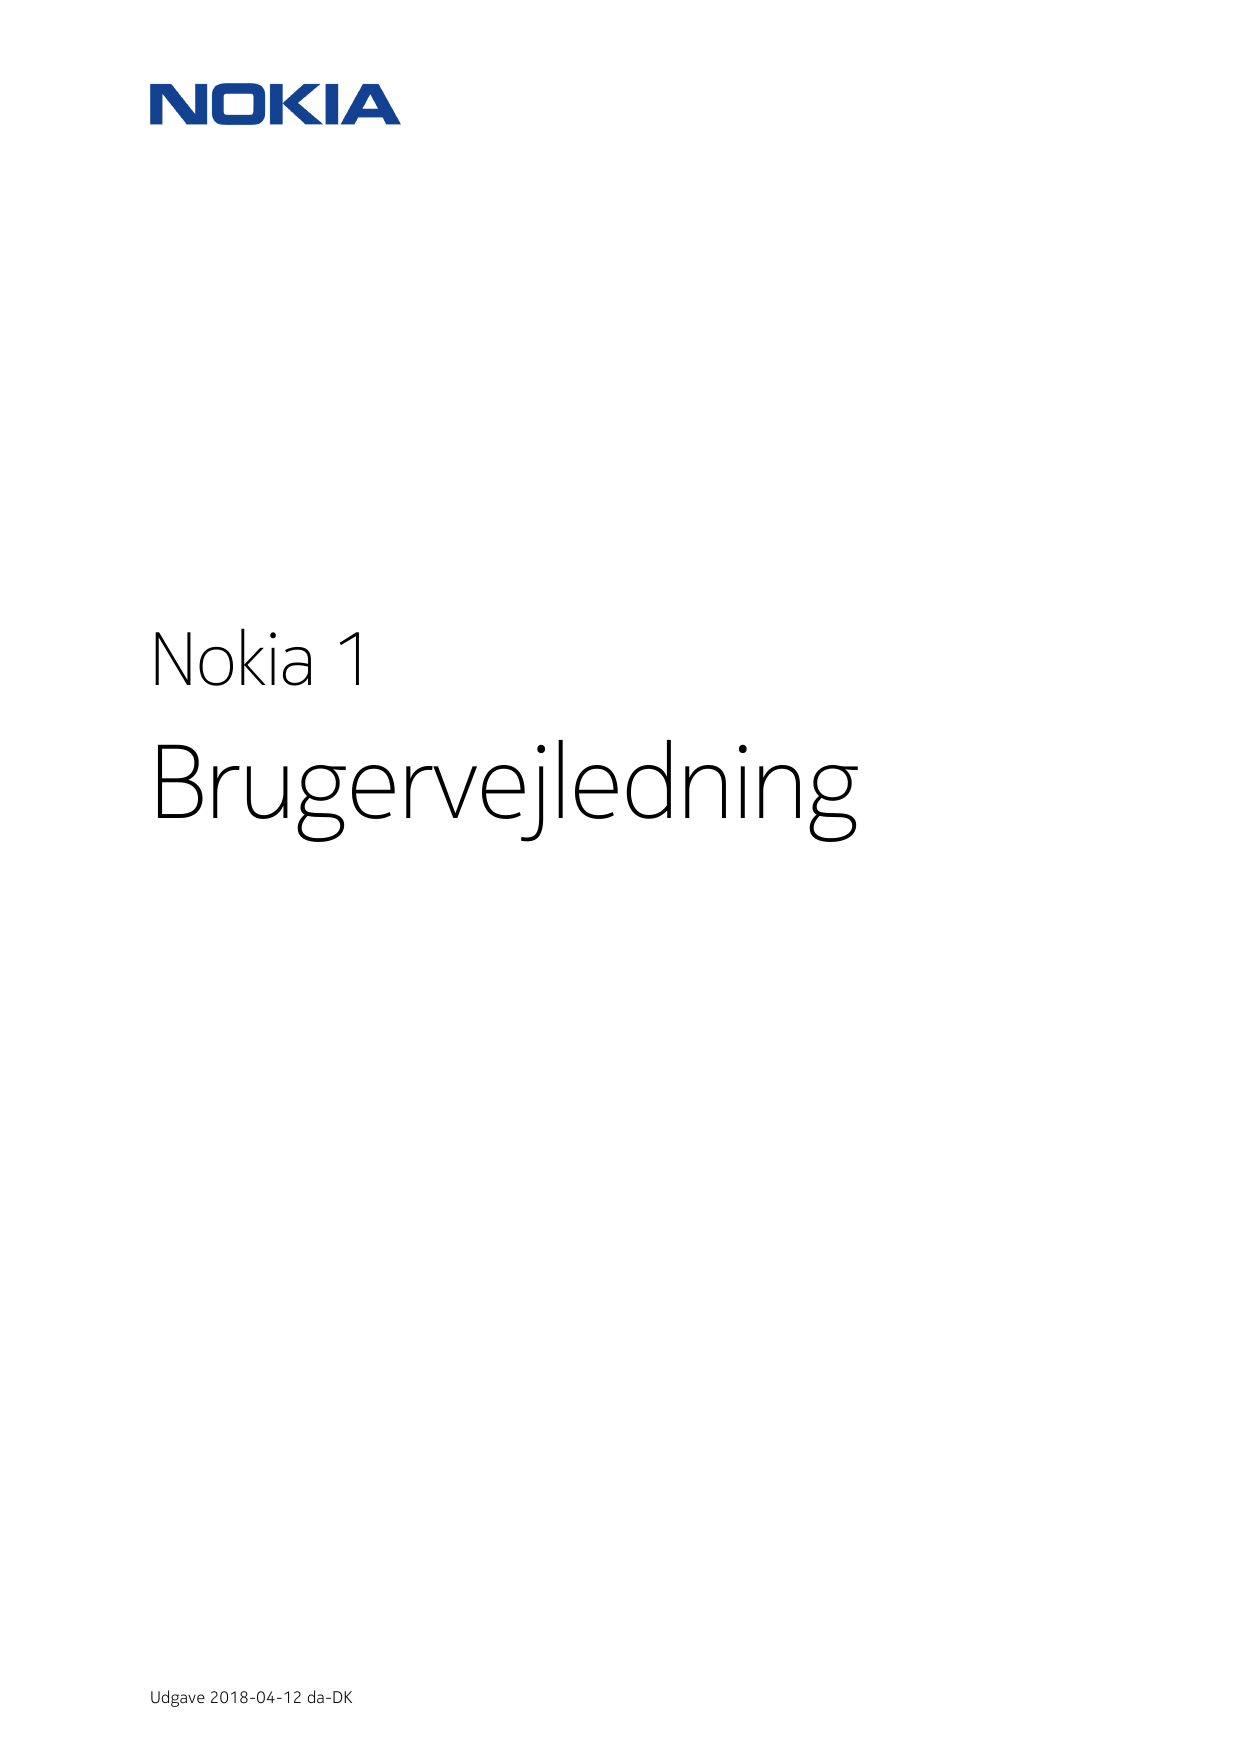 Nokia 1BrugervejledningUdgave 2018-04-12 da-DK